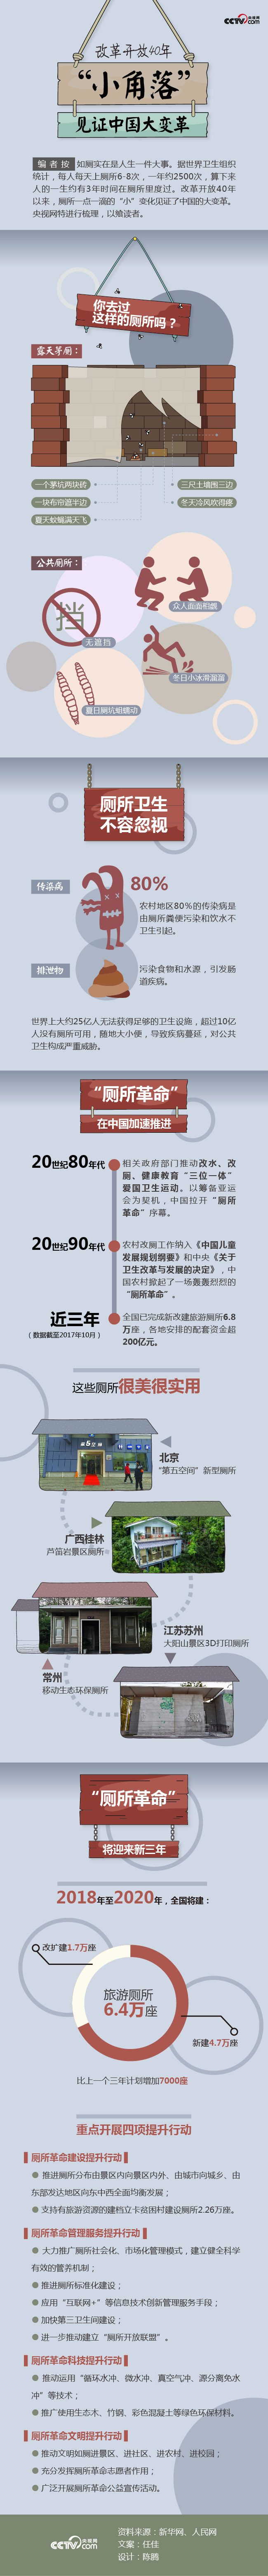 改革开放40年――“小角落”见证中国大变革